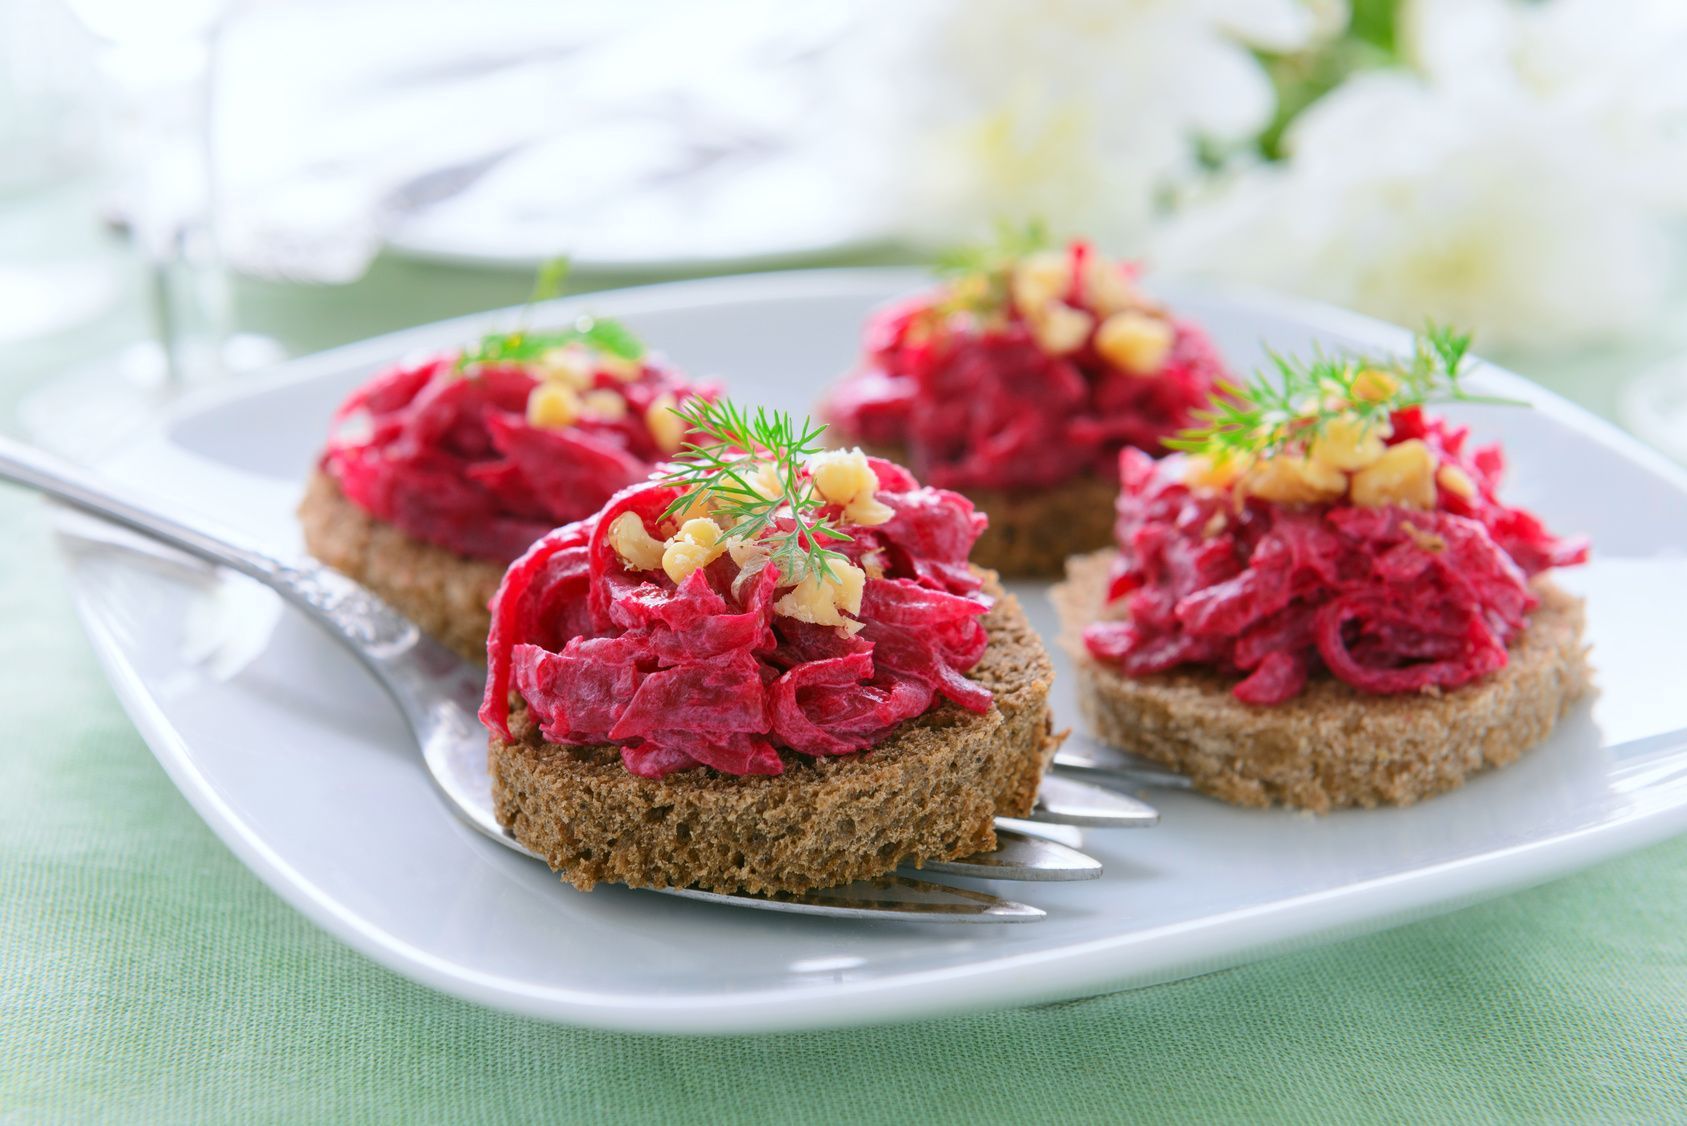 Rote-Bete-Salat schmeckt auch hervorragend auf Brot – probieren Sie es aus.